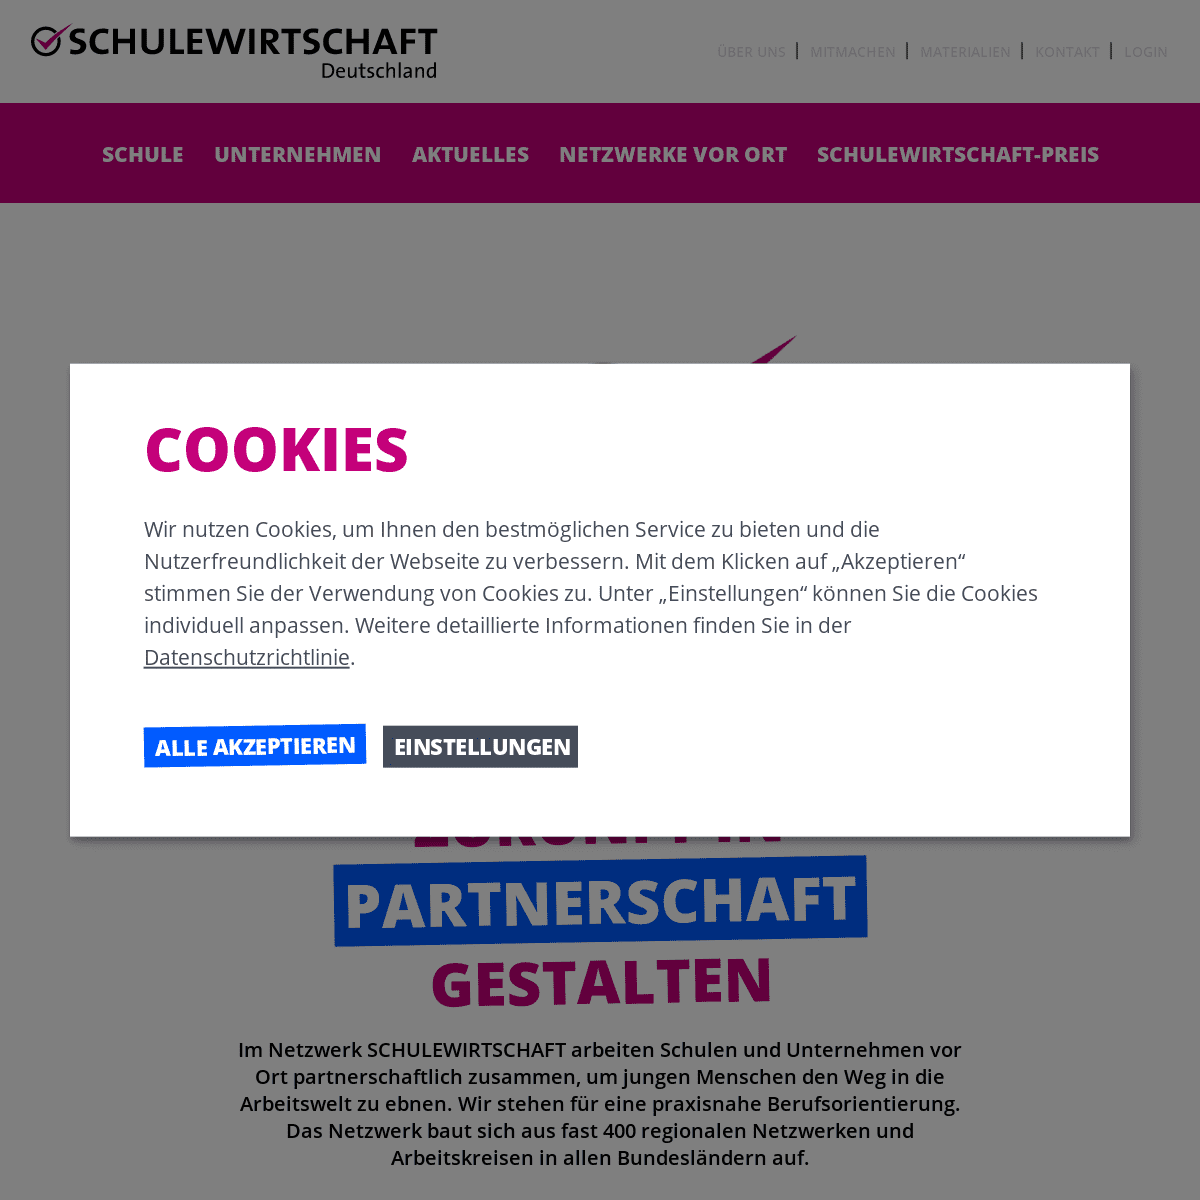 A complete backup of https://schulewirtschaft.de